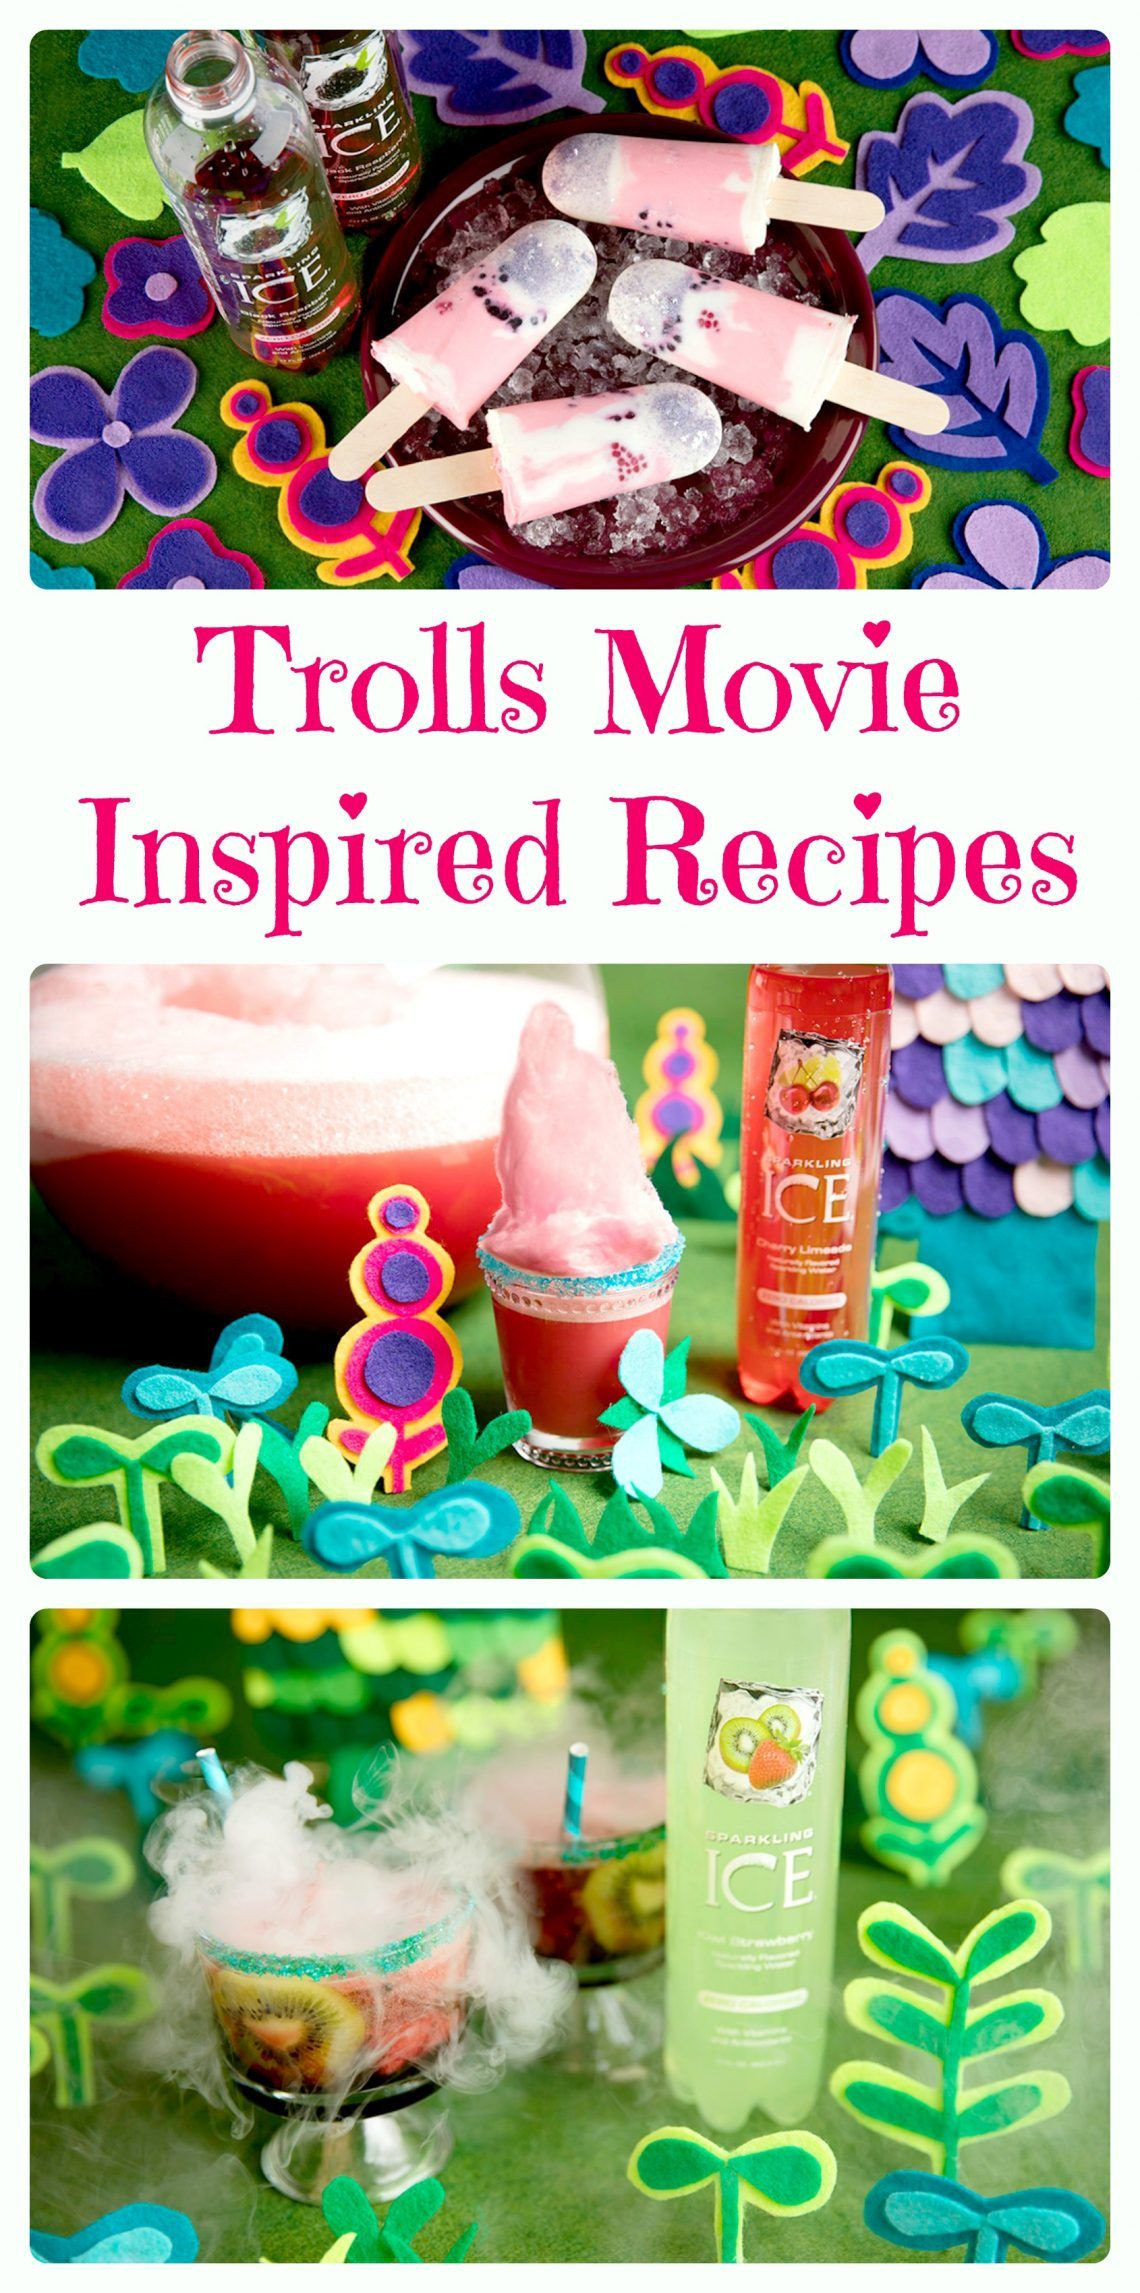 Dreamworks Trolls Birthday Party Ideas
 DreamWorks Trolls Movie Inspired Recipes Fun Trolls party